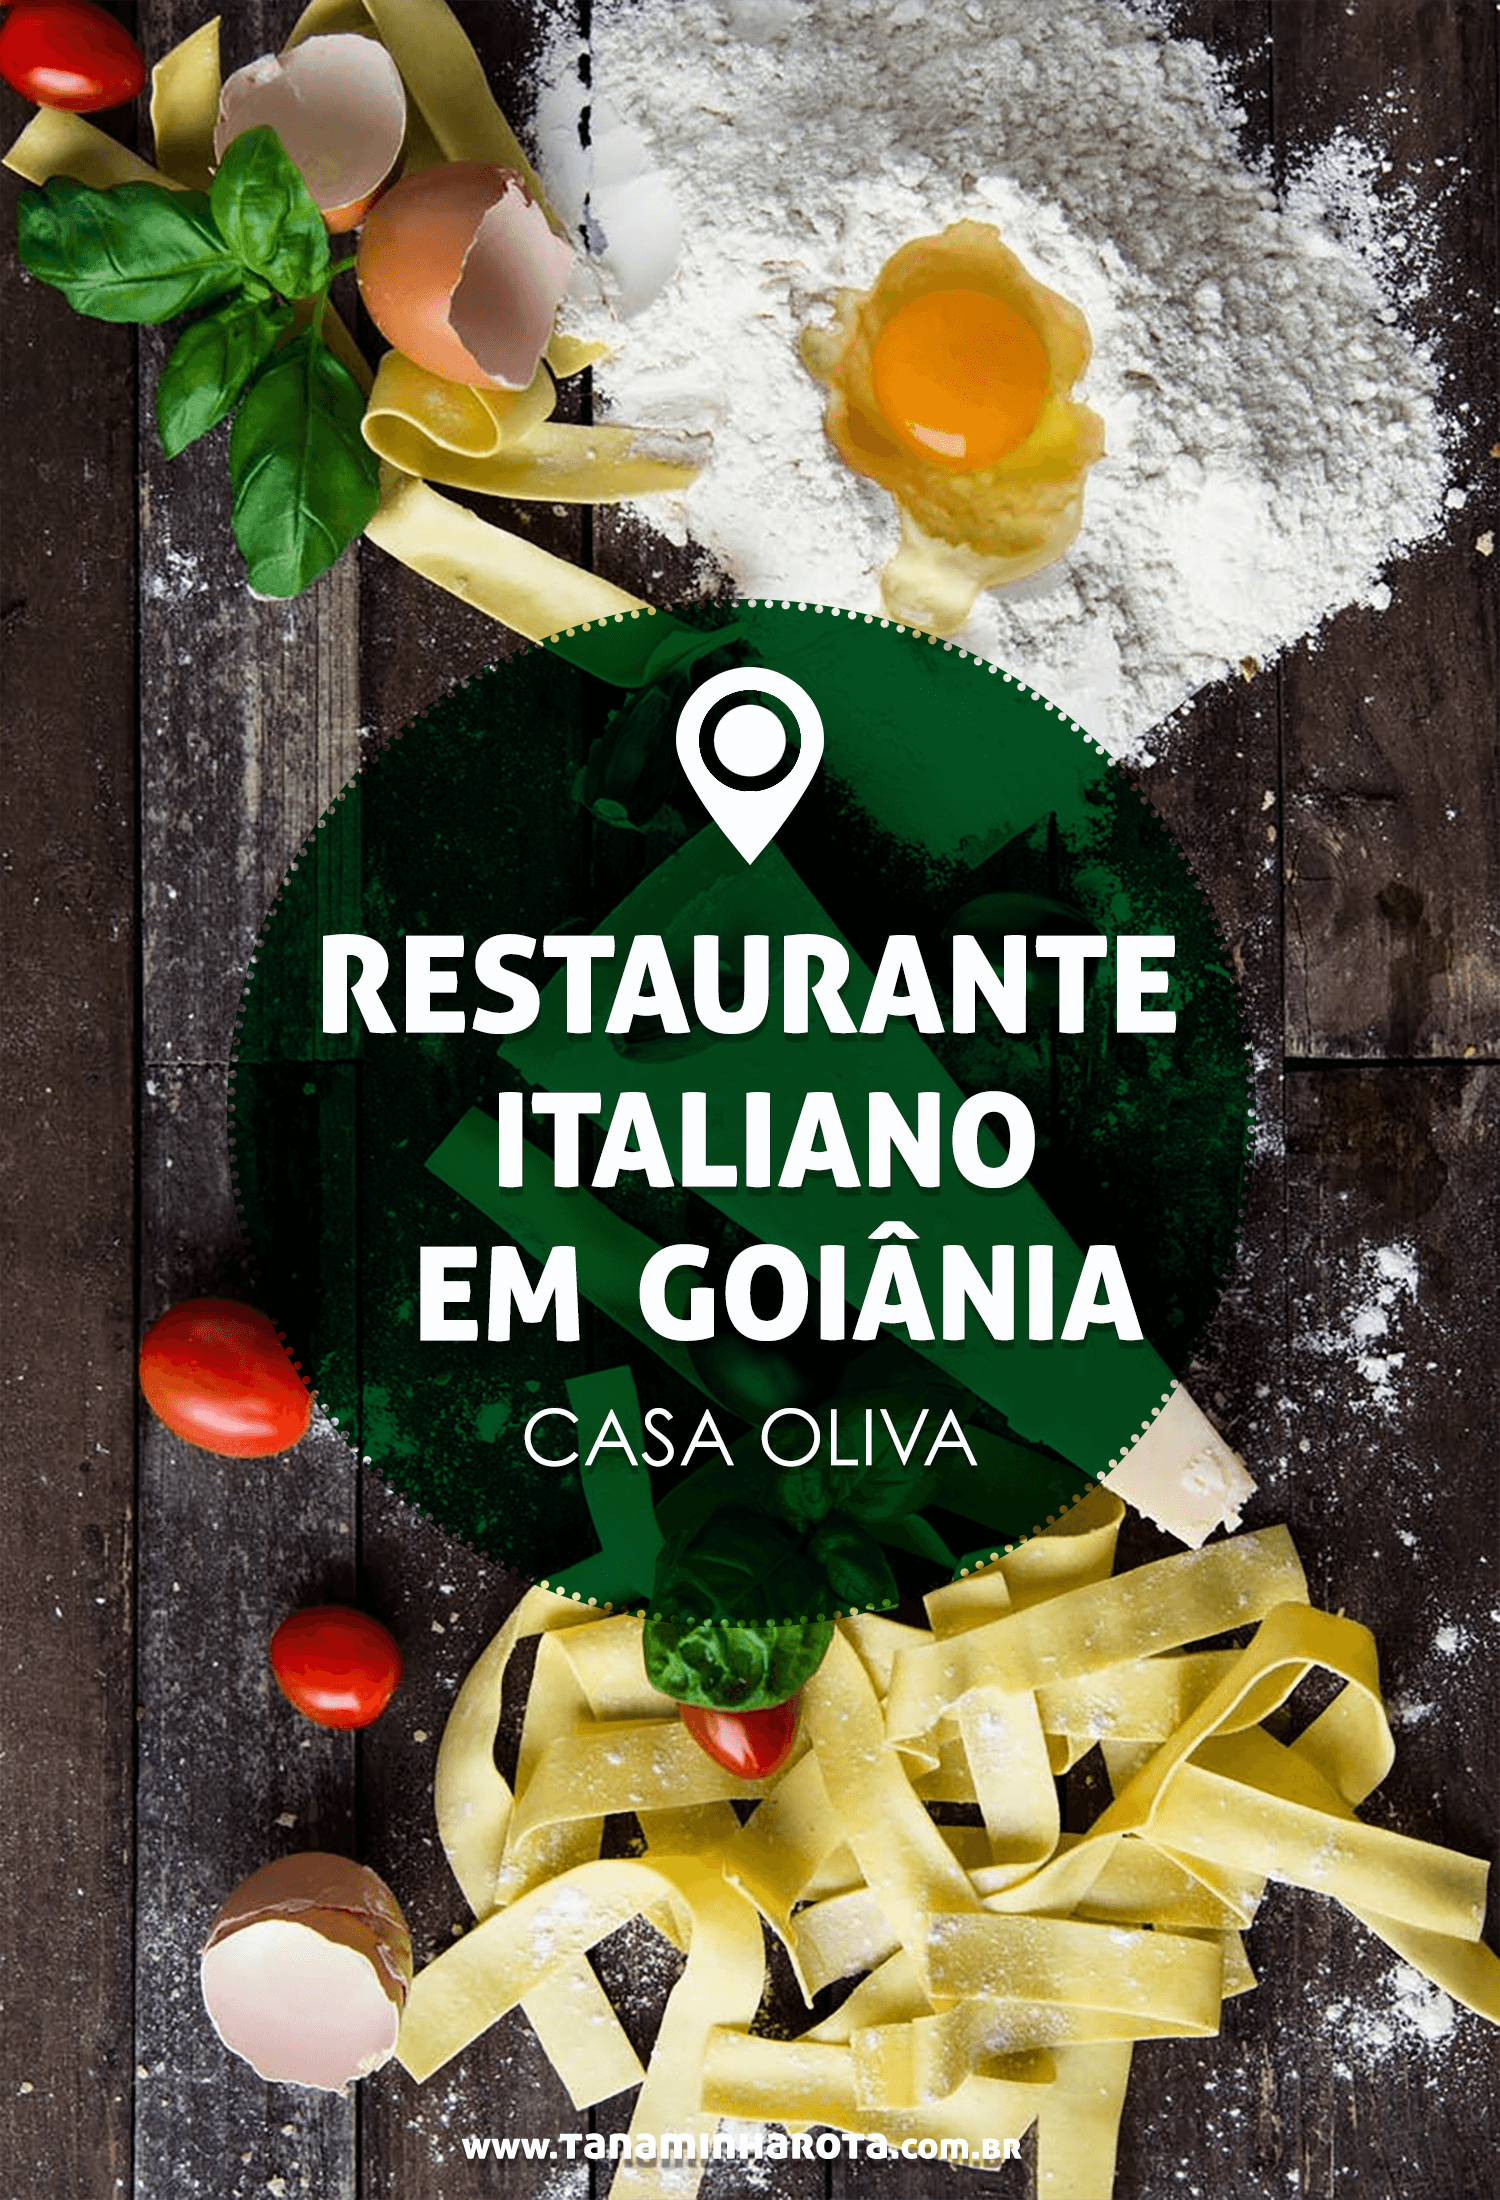 Procurando um lugar legal para comer em Goiânia? Então veja as delícias da Casa Oliva, um restaurante italiano maravilhoso! #gastronomia #brasil #goiania #viagem